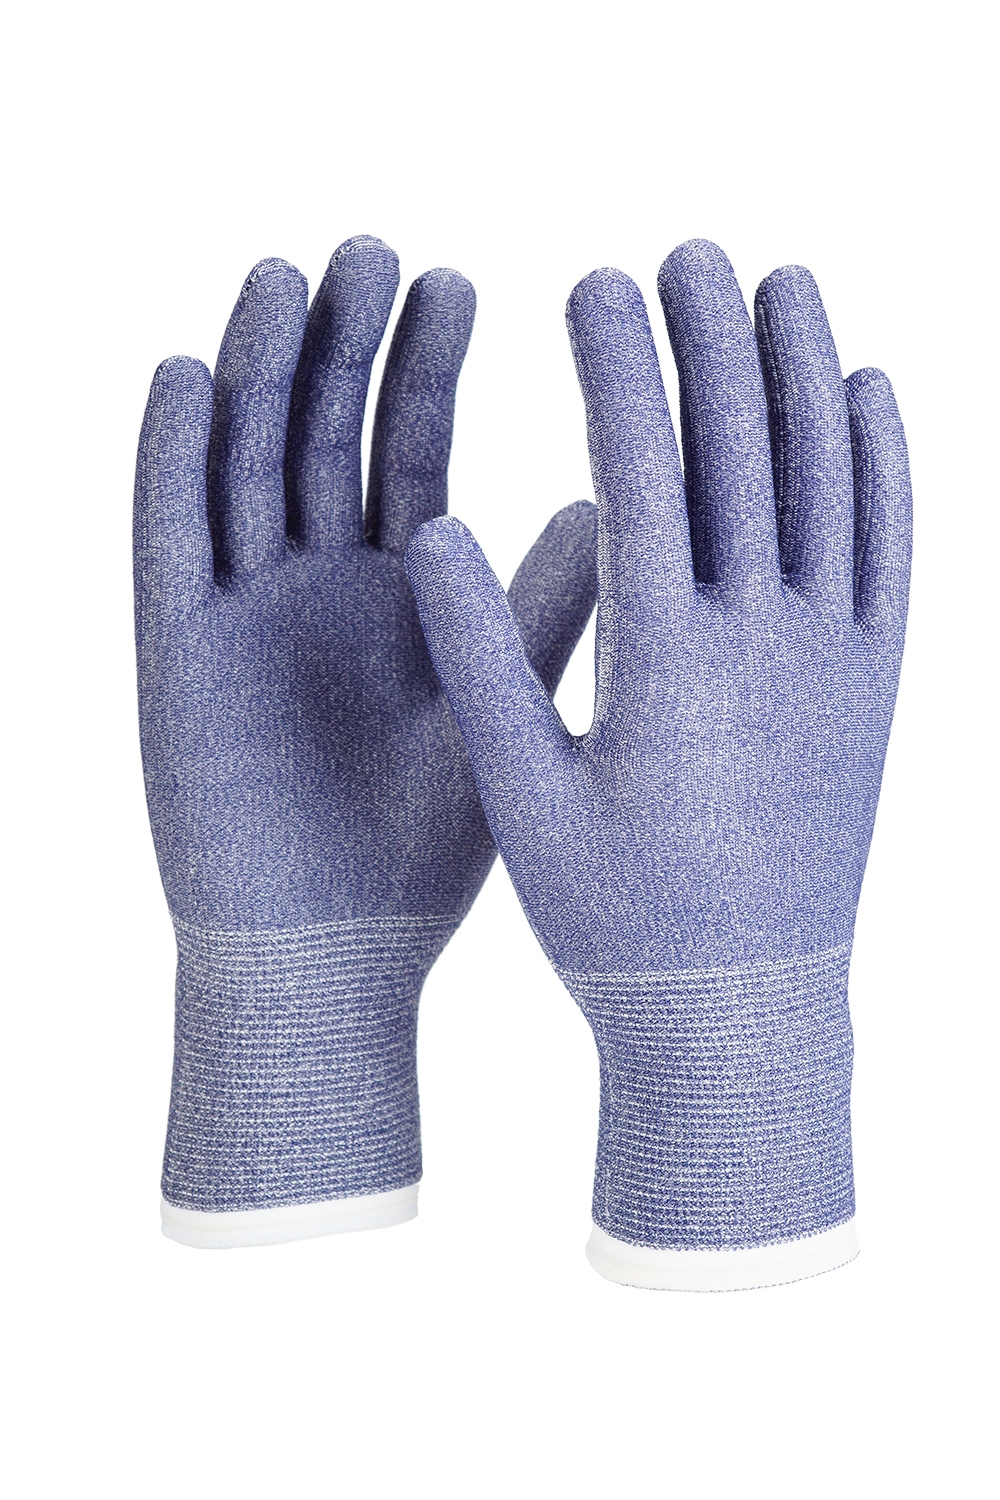 MaxiCut® Ultra™ Schnittschutz-Strickhandschuhe (58-917) in Blau, Größe 12